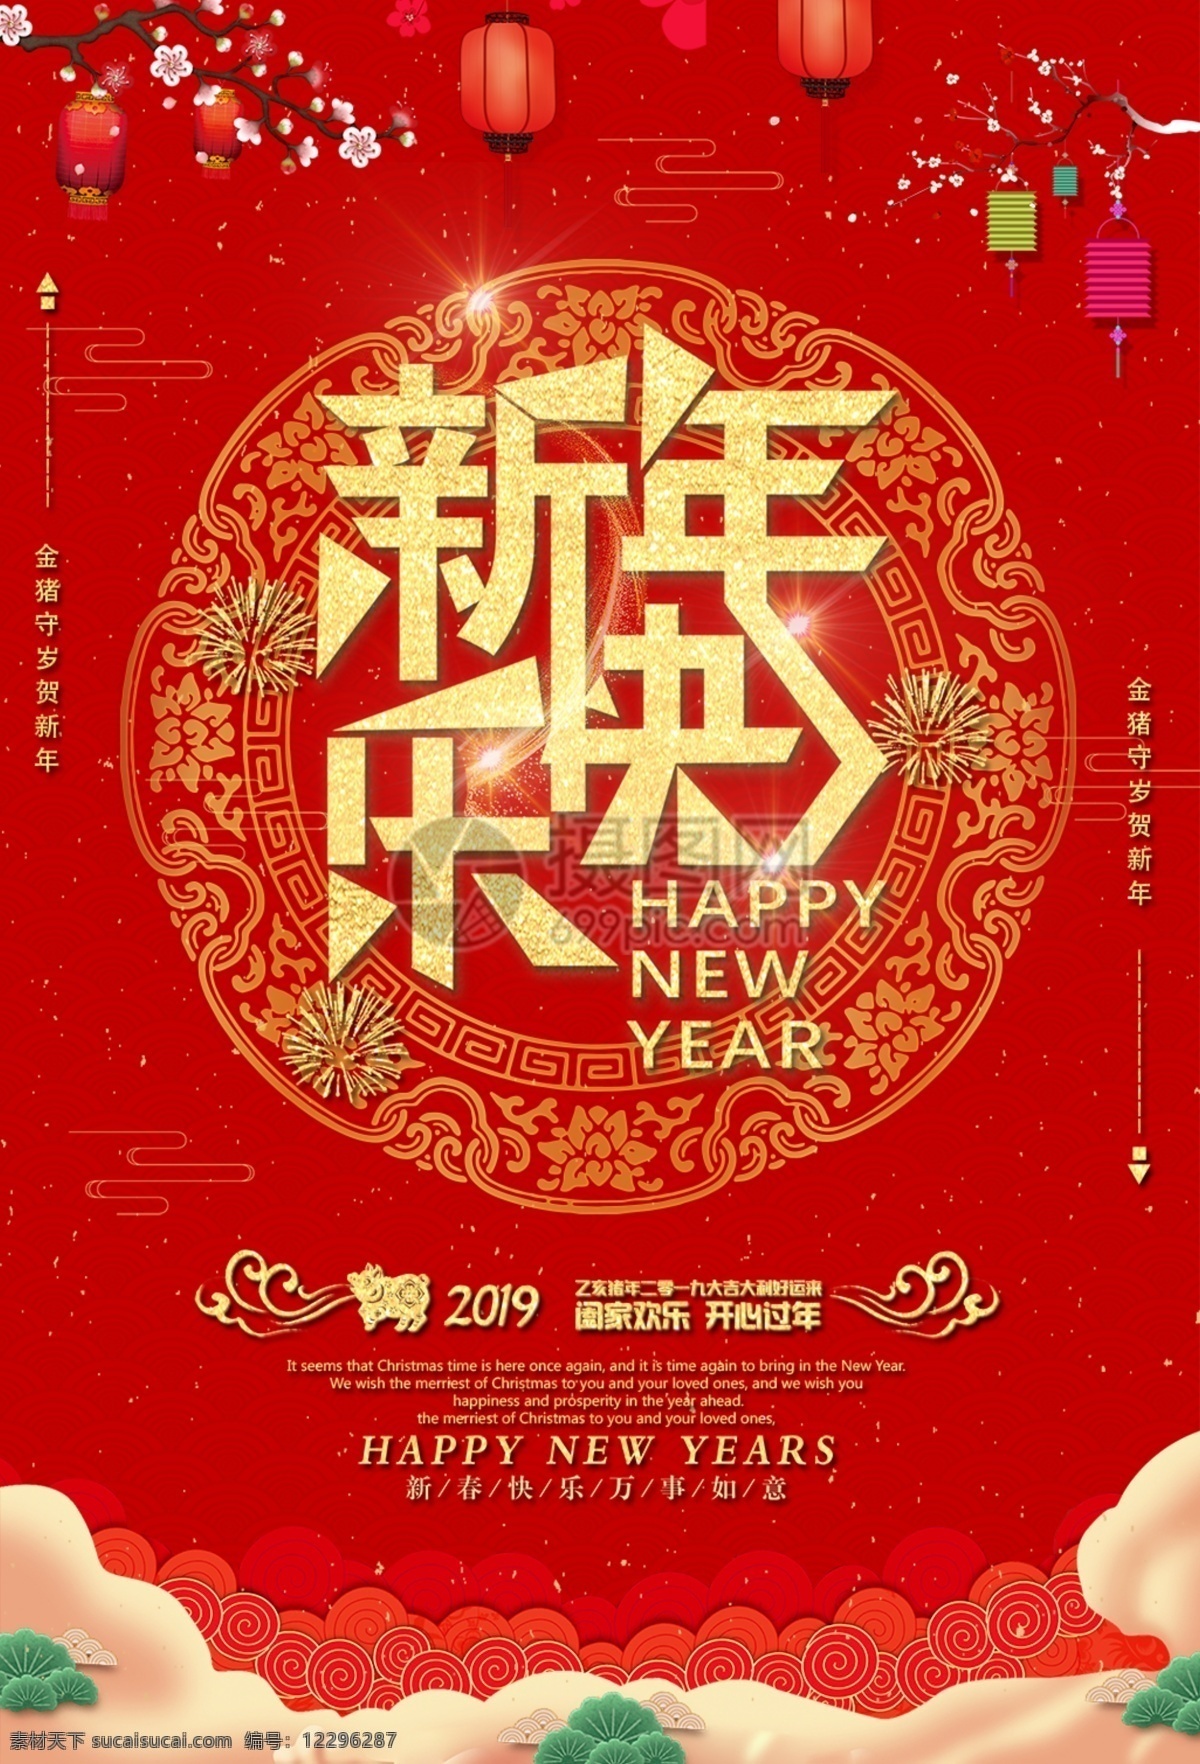 新年 快乐 猪年 海报 新年快乐 新春 春节 过年 过节 红色 喜气 大气 阖家欢乐 开心过年